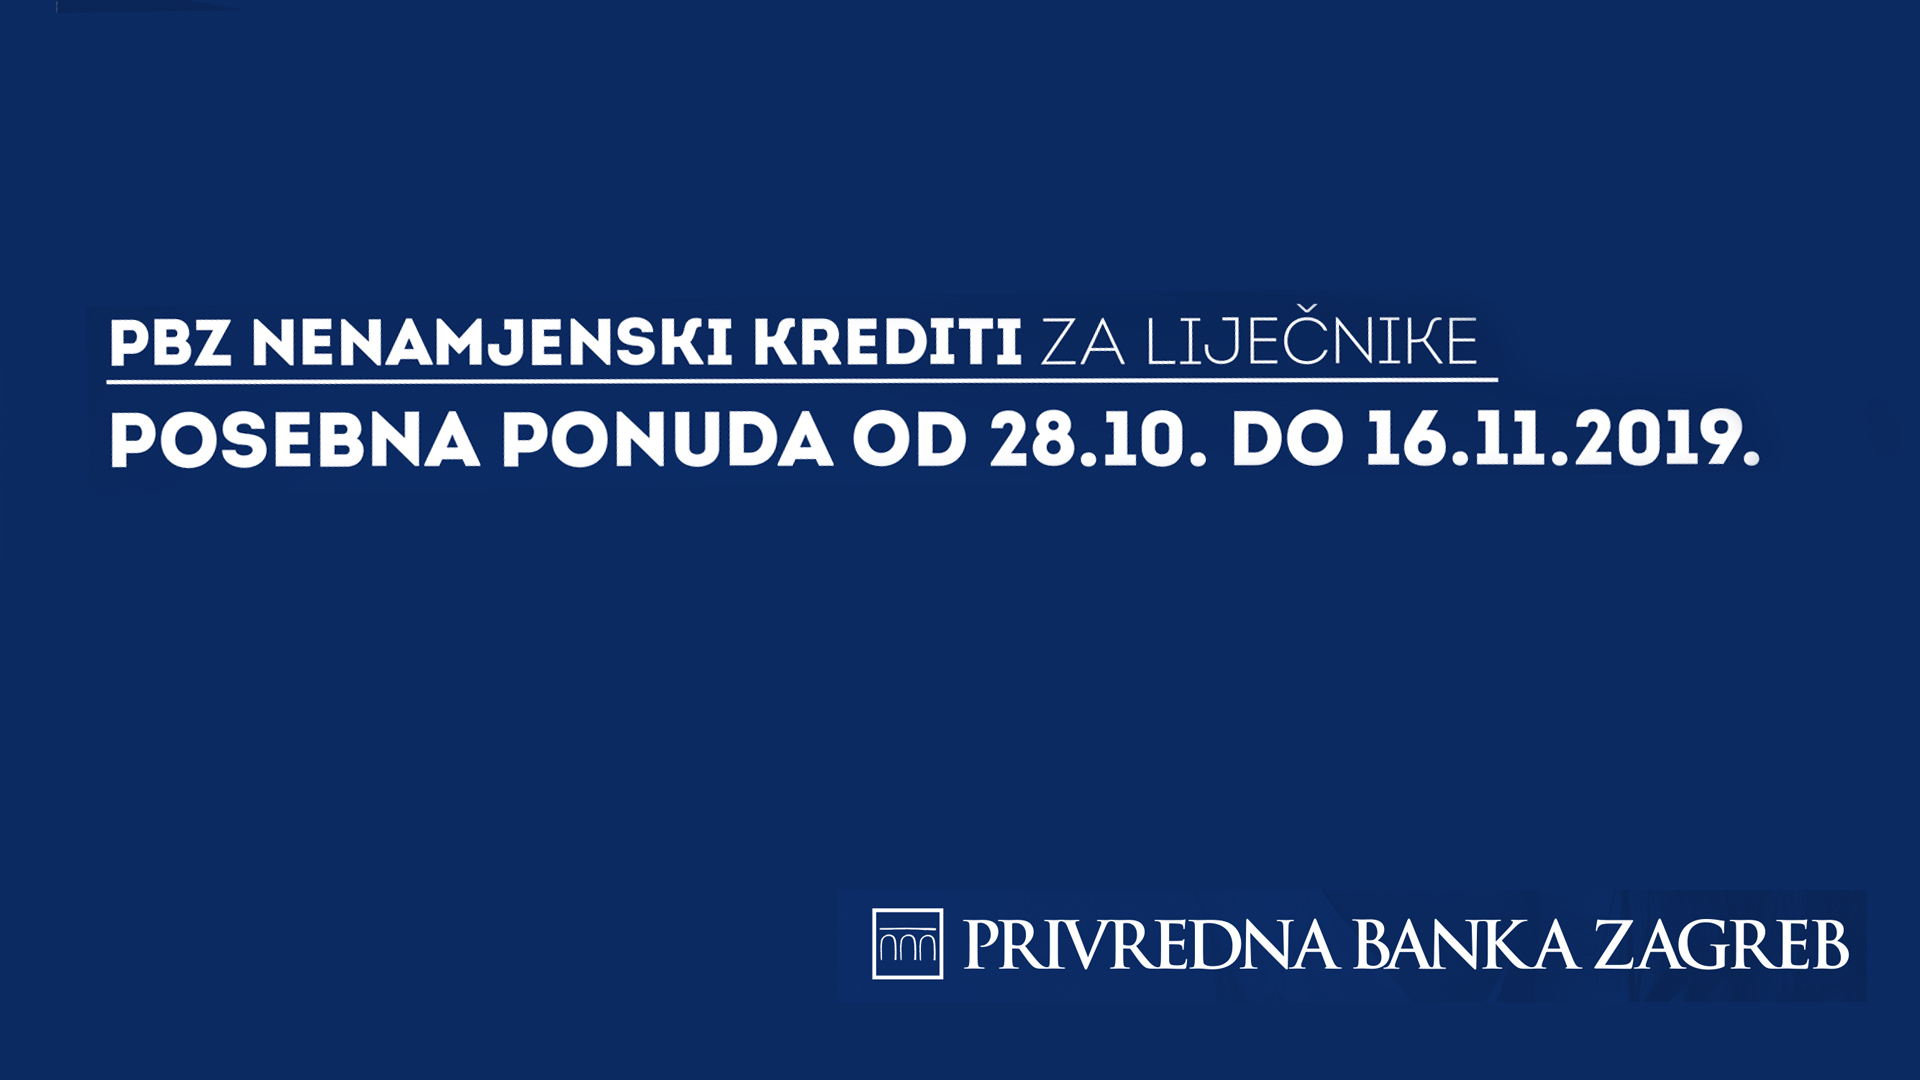 Hrvatska narona banka prodaje sek valutu po cijeni